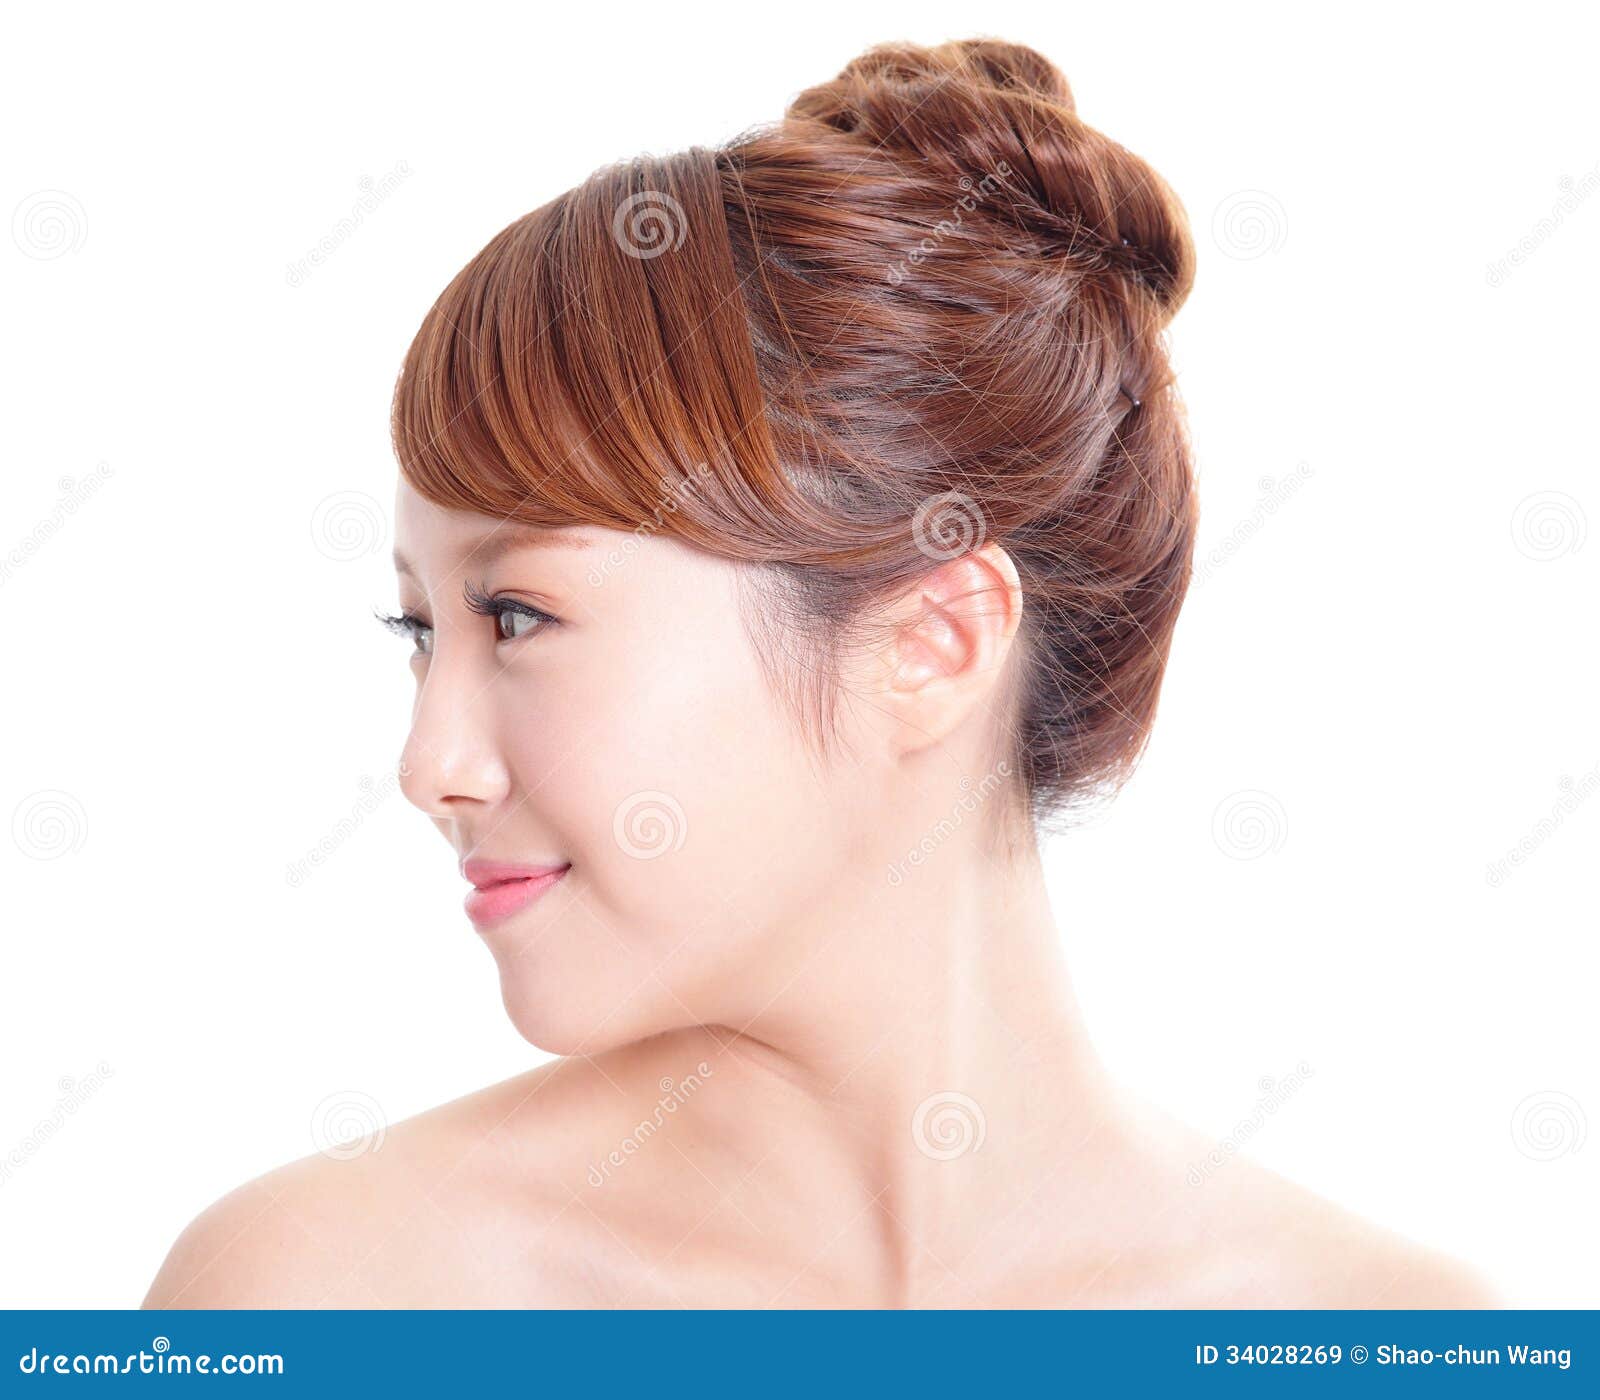 Asian female profile picture